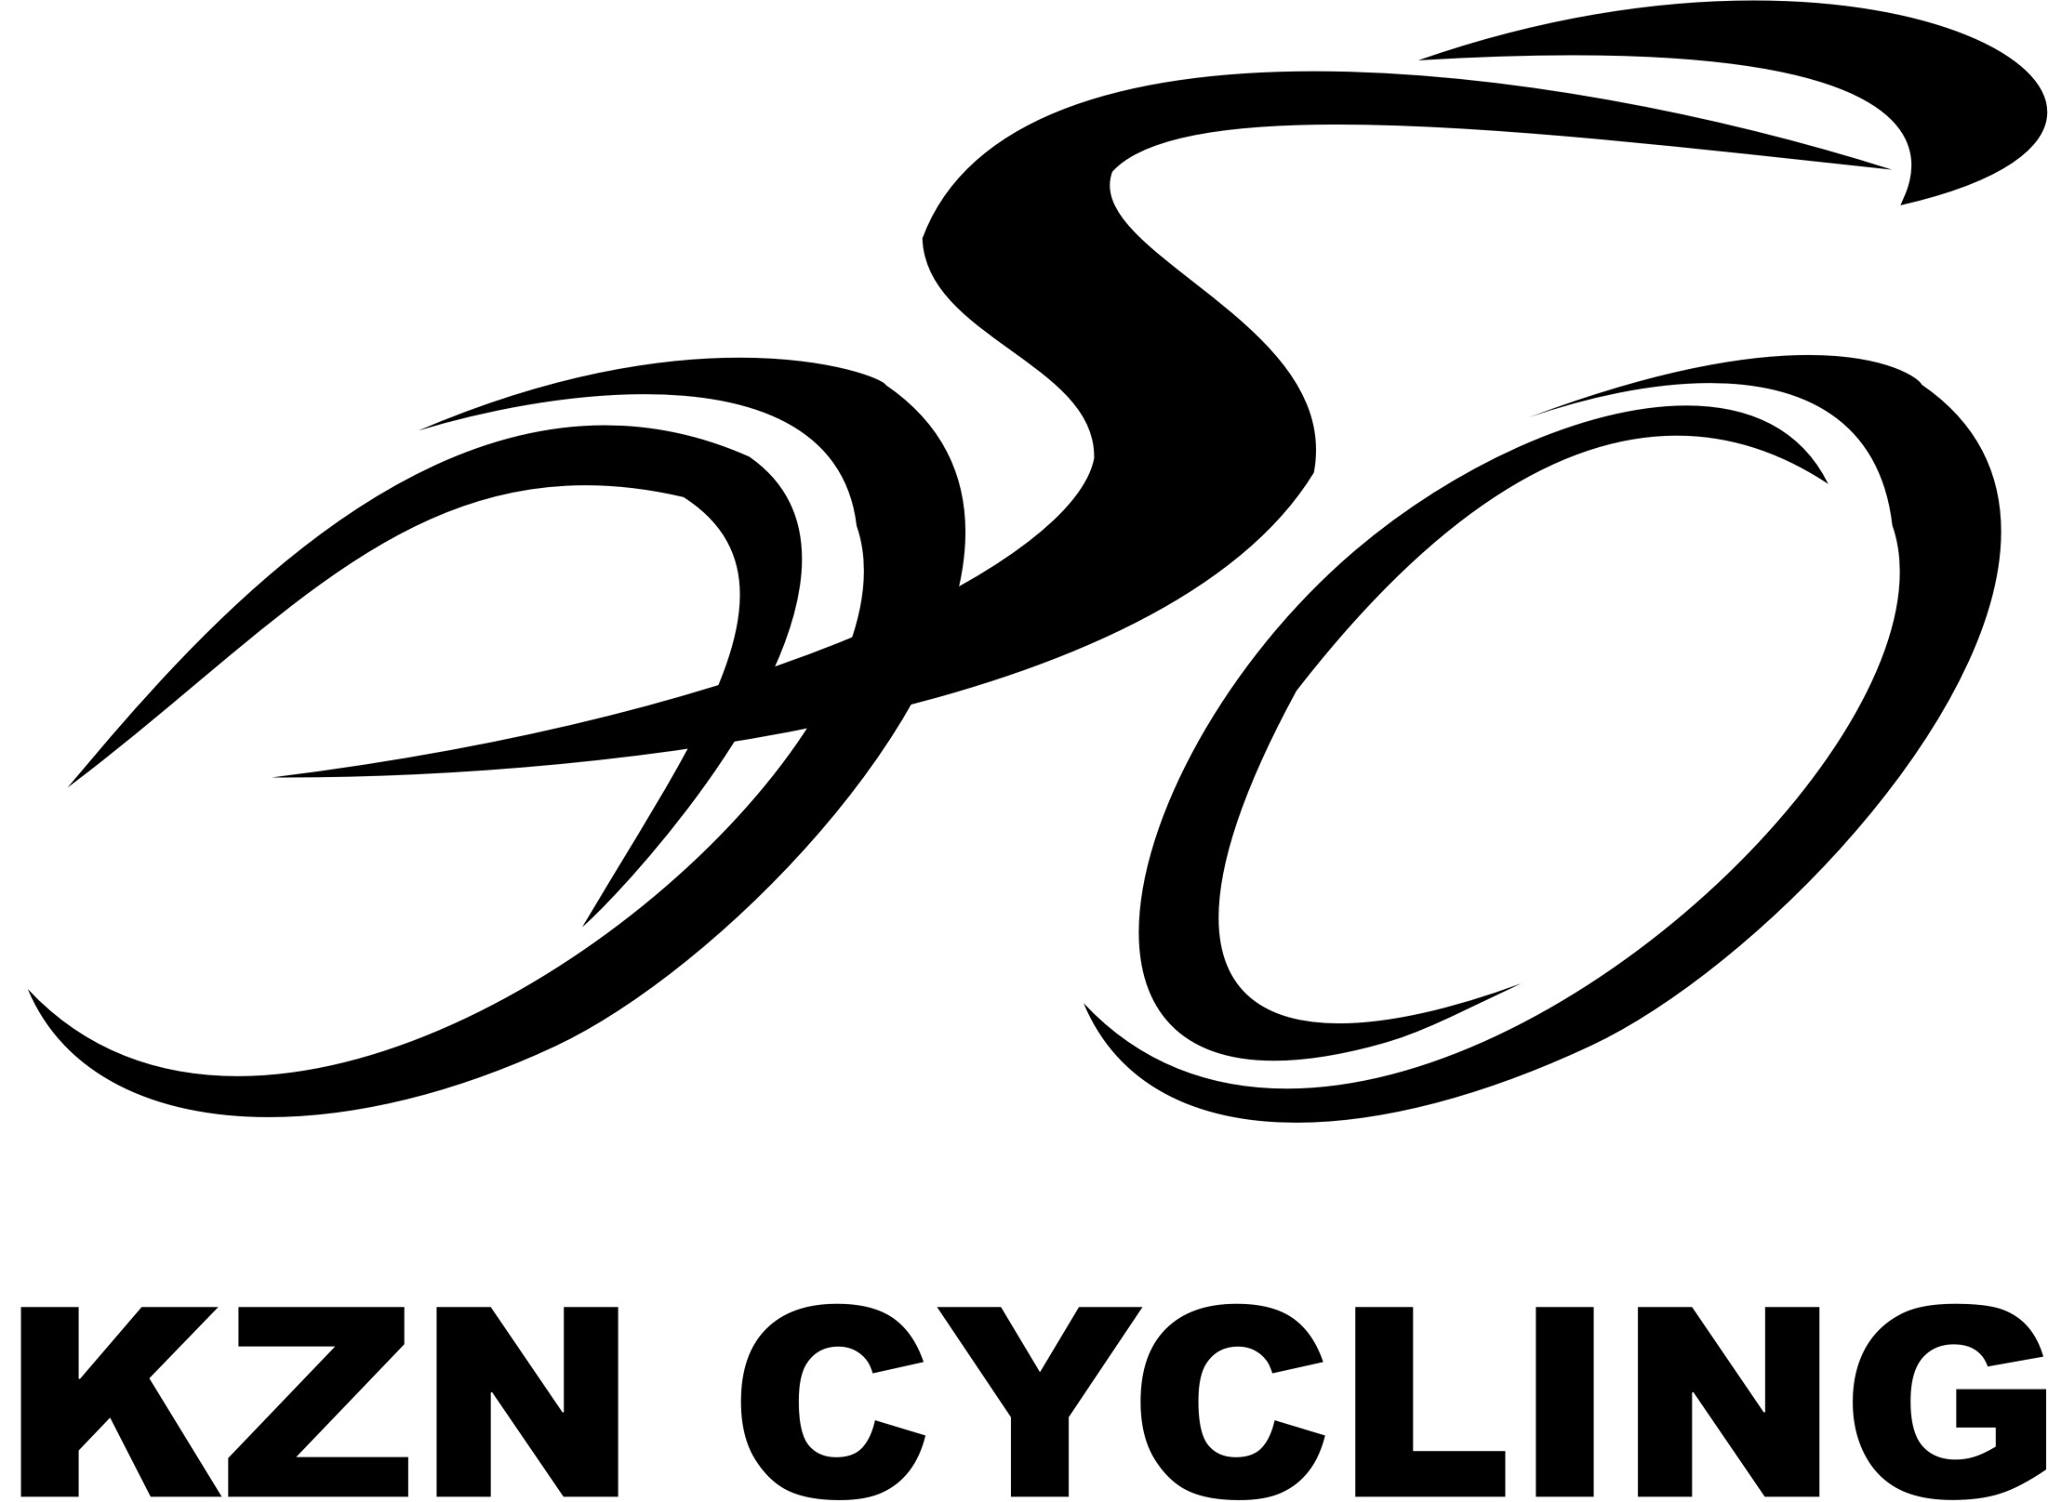 Cycling Logo - KZN Cycling logo - OnYourBike.bike